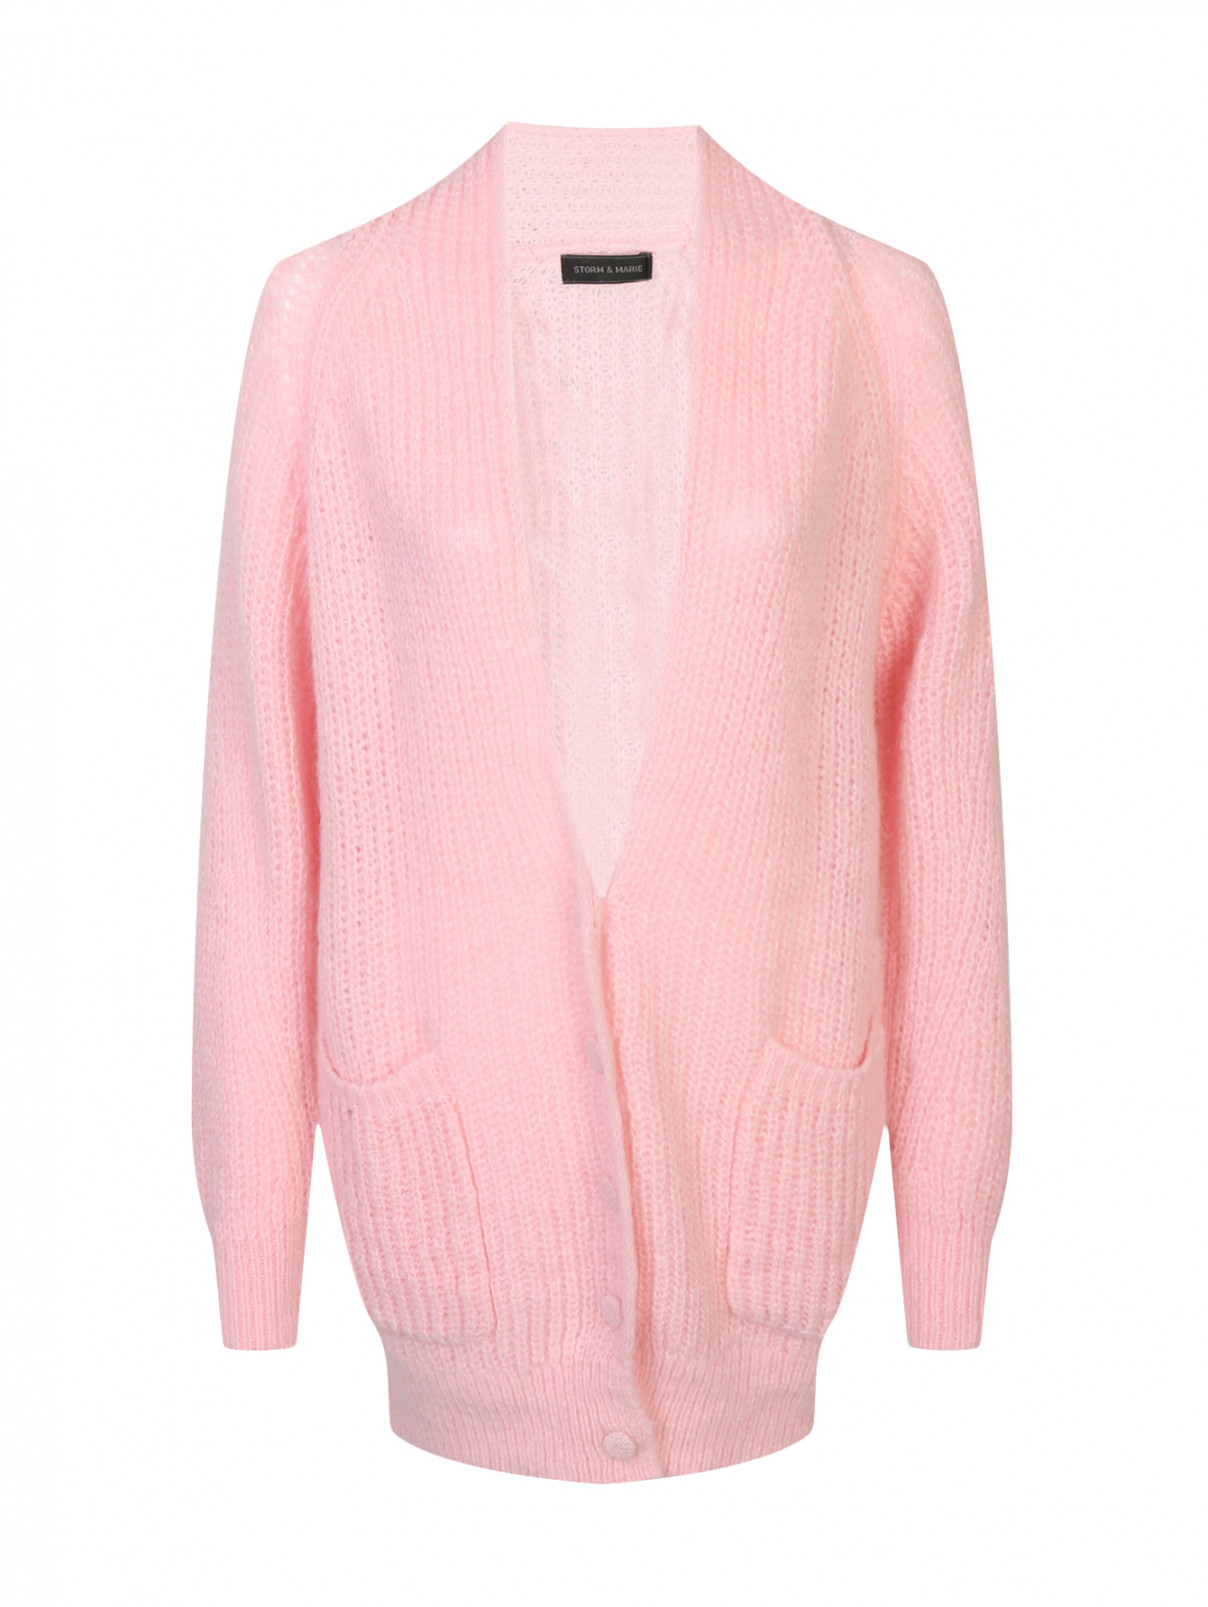 Кардиган крупной вязки с накладными карманами Storm&Marie  –  Общий вид  – Цвет:  Розовый